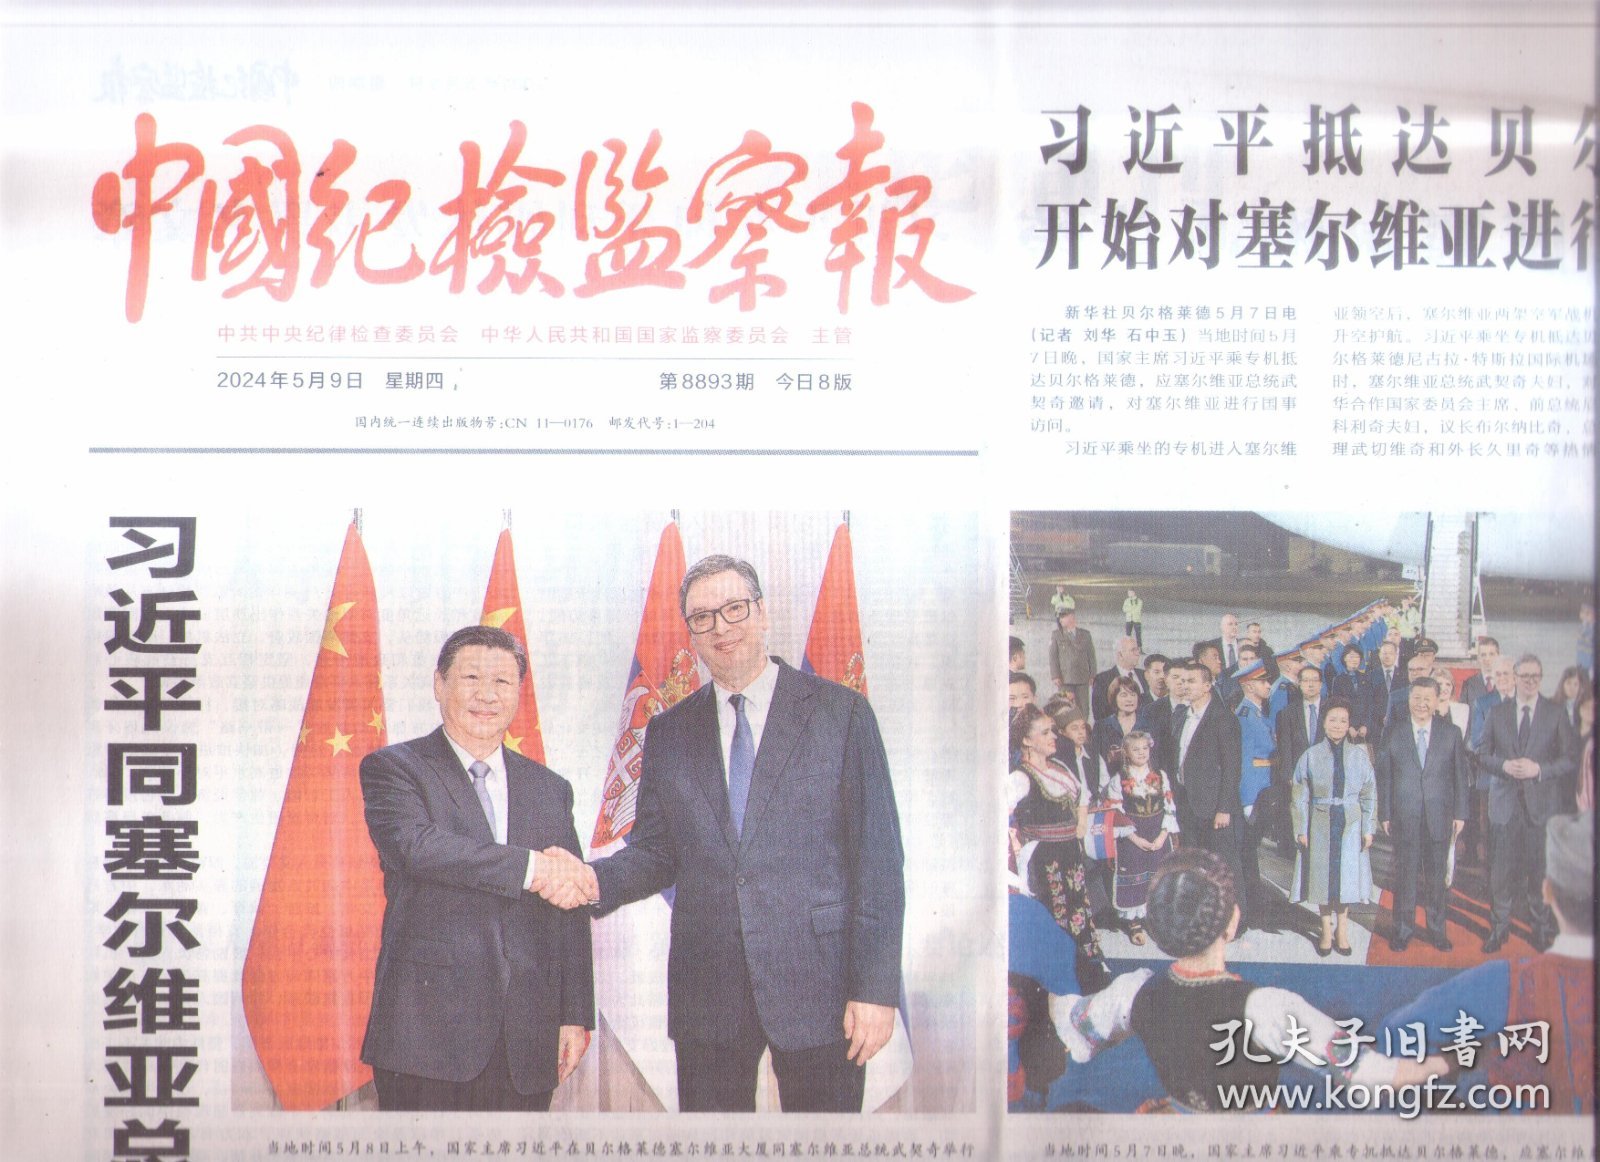 2024年5月9日     中国纪检监察报    抵达贝尔格莱德开始对塞尔维亚进行国事访问 同塞尔维亚总统举行会谈 出席塞尔维亚总统举行的欢迎宴会 在匈牙利媒体发表署名文章